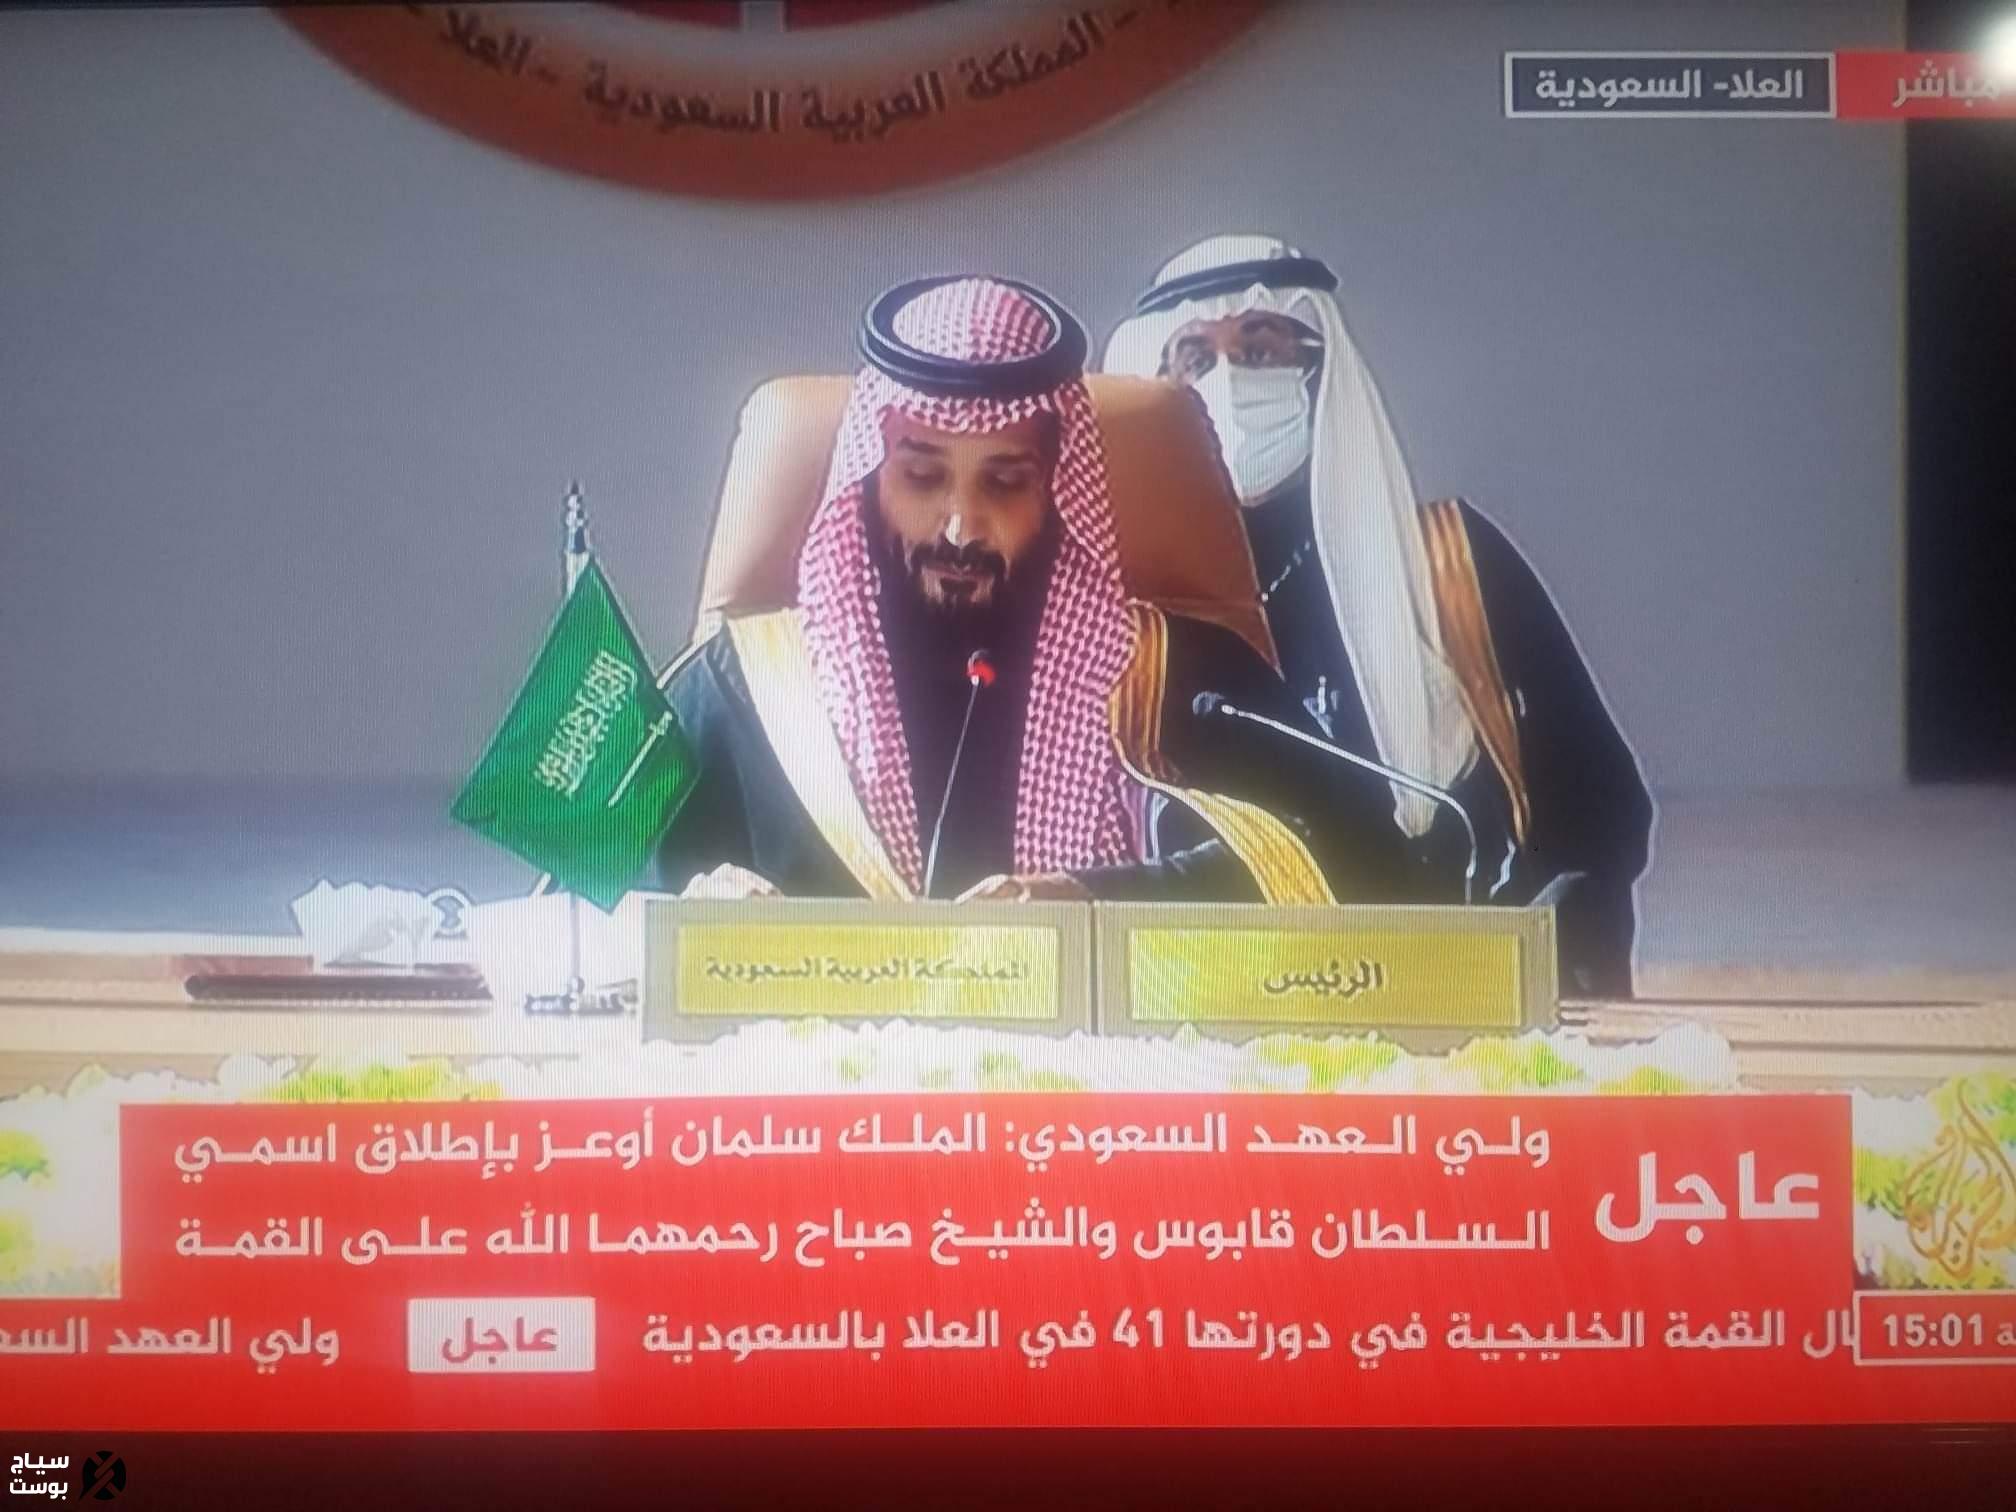 ورد الان : أوامر ملكية تطيح بكبار قيادات الدولة السعودية بعد كلمة مفاجئة للأمير محمد بن سلمان. (تفاصيل)